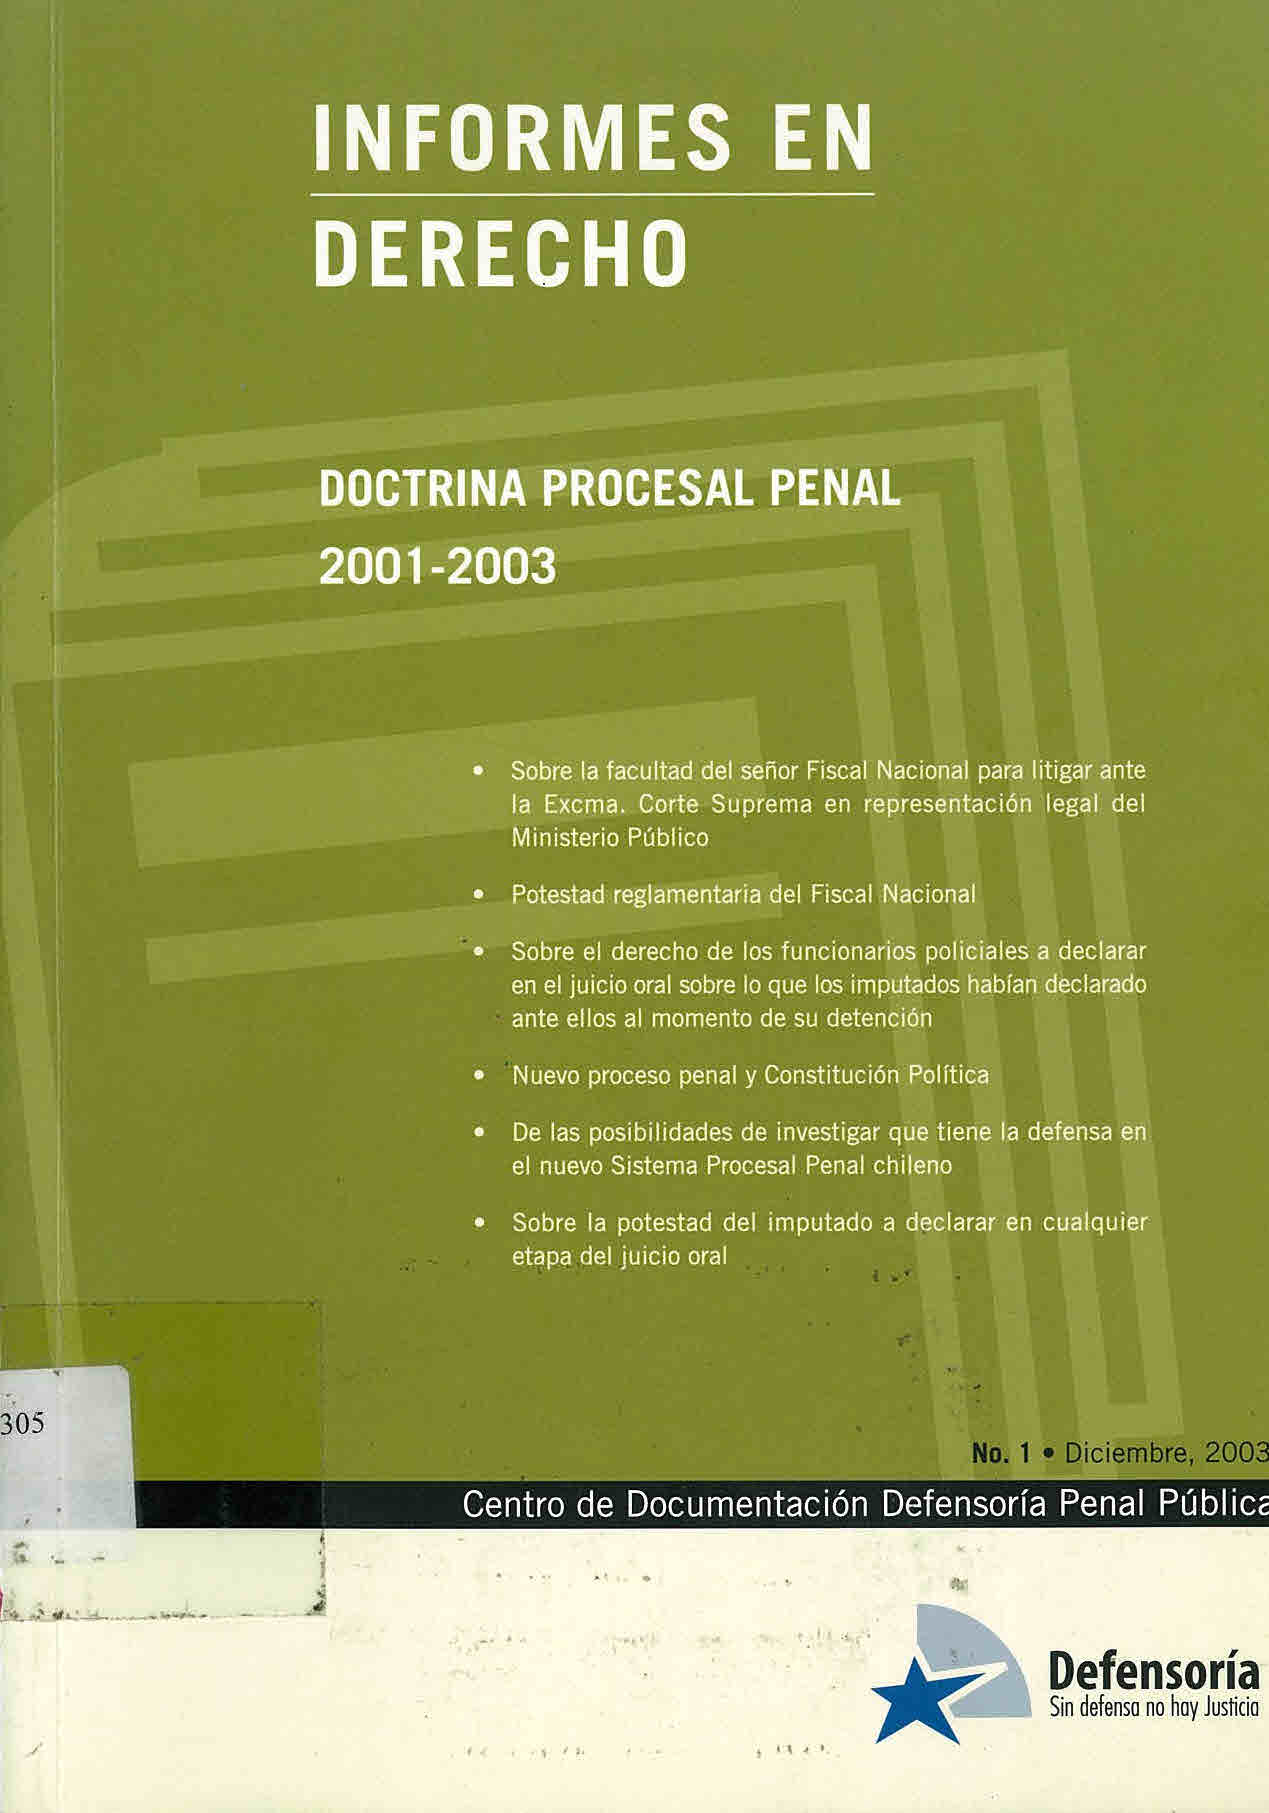 Doctrina procesal penal 2001-2003